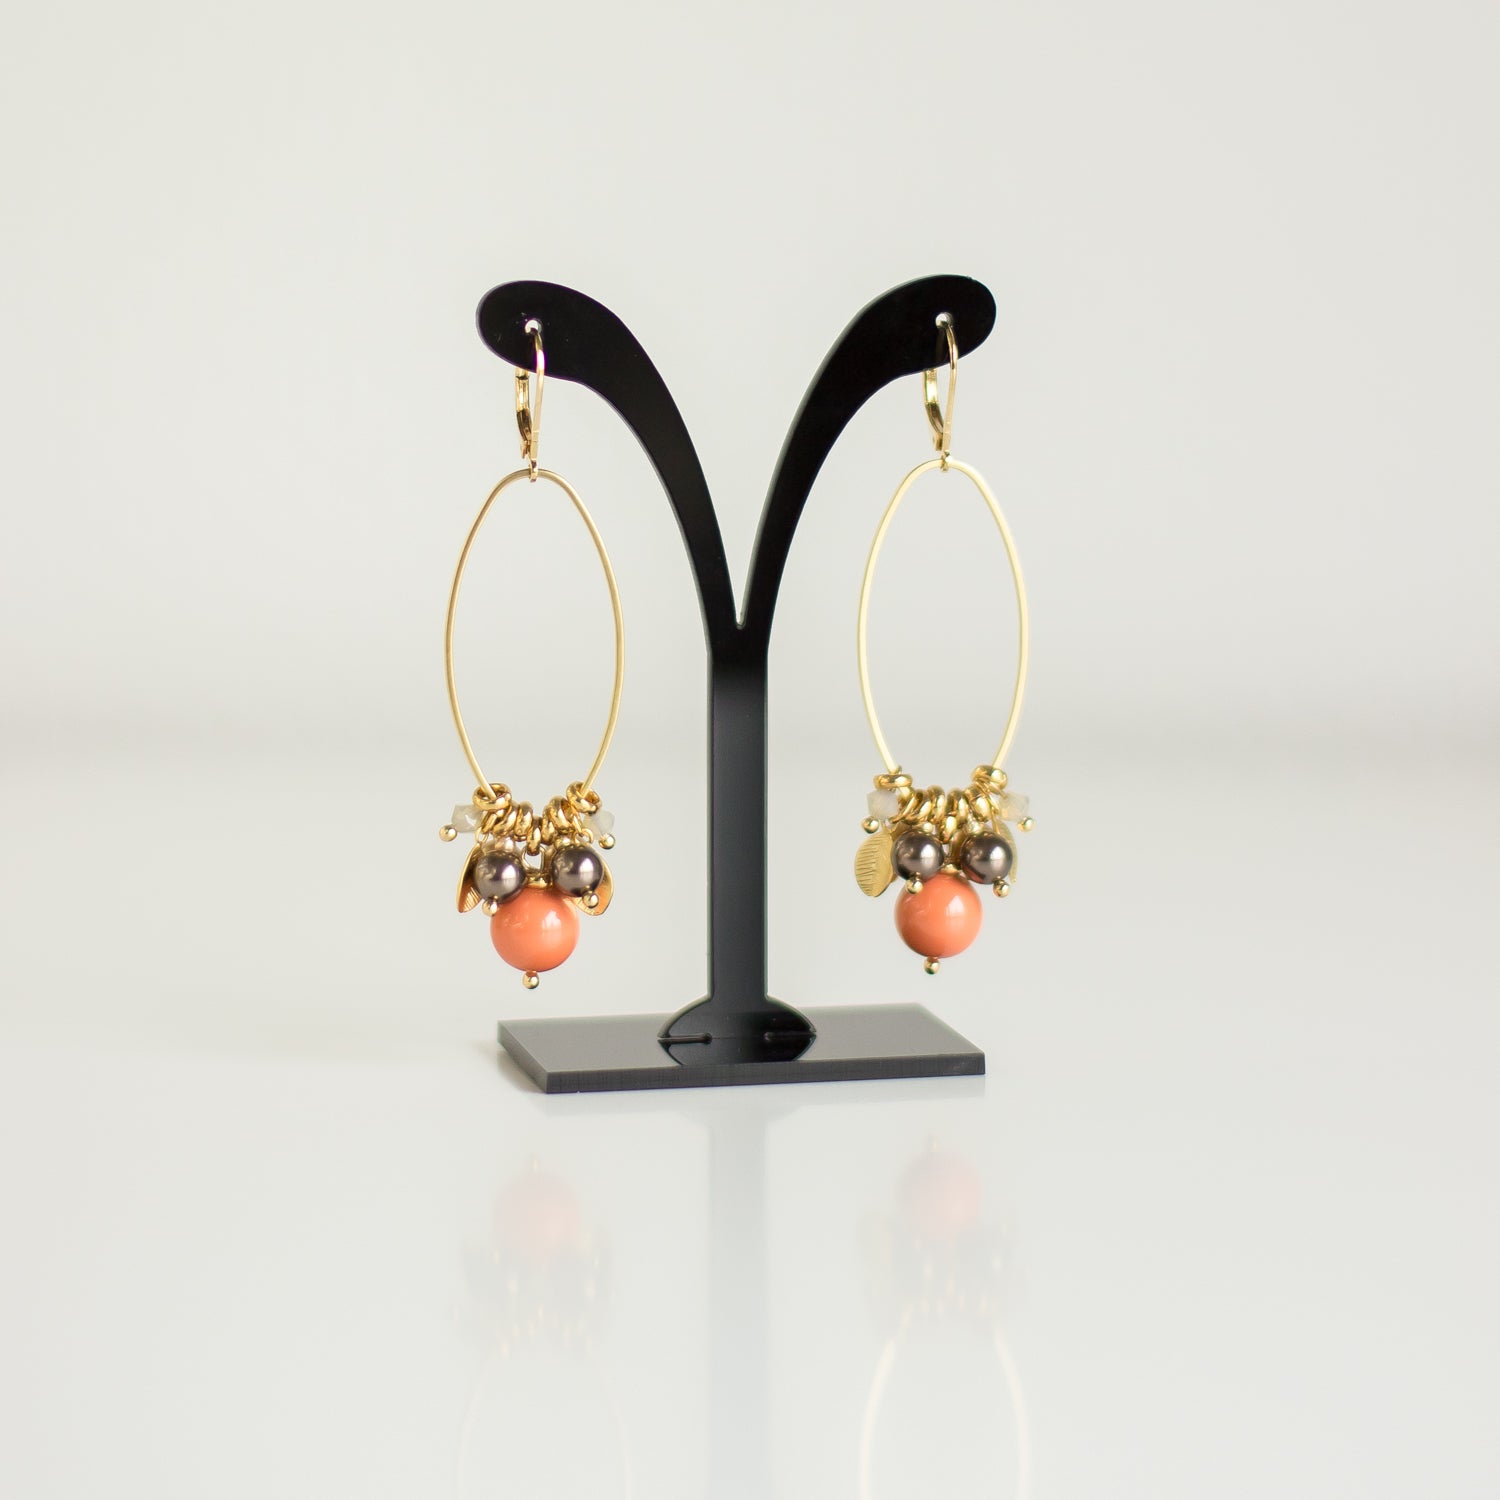 Online boutique. Handmade jewelry. Buy Orange-Gold earrings. Pearl earrings. Long earrings. Dangle drop earrings. Geometric Jewelry. Rustic color jewelry.